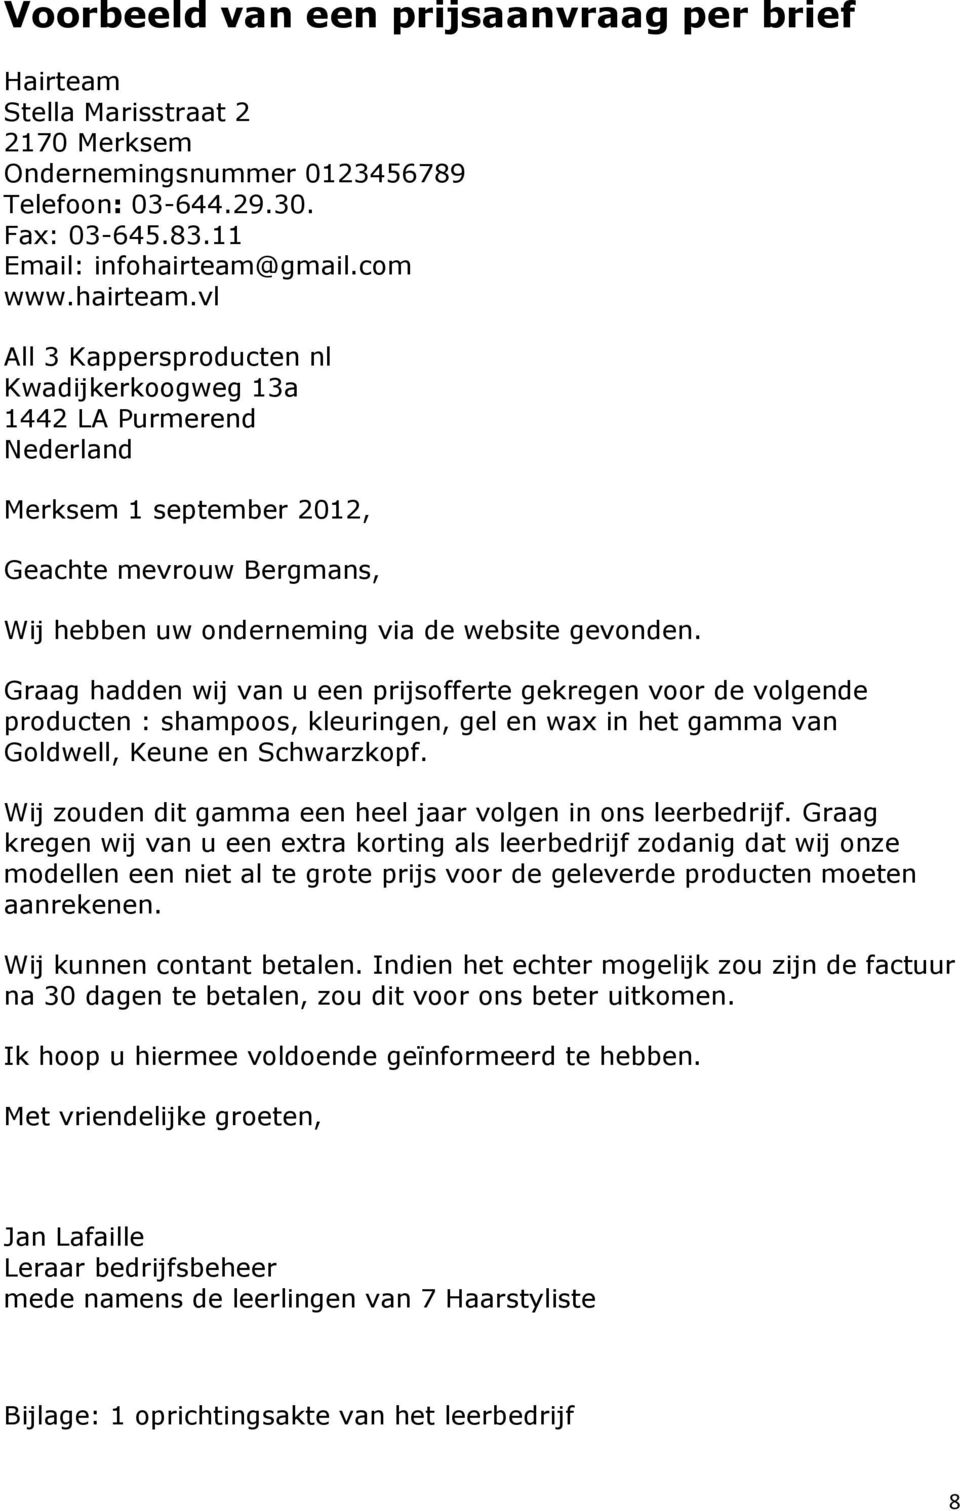 vl All 3 Kappersproducten nl Kwadijkerkoogweg 13a 1442 LA Purmerend Nederland Merksem 1 september 2012, Geachte mevrouw Bergmans, Wij hebben uw onderneming via de website gevonden.